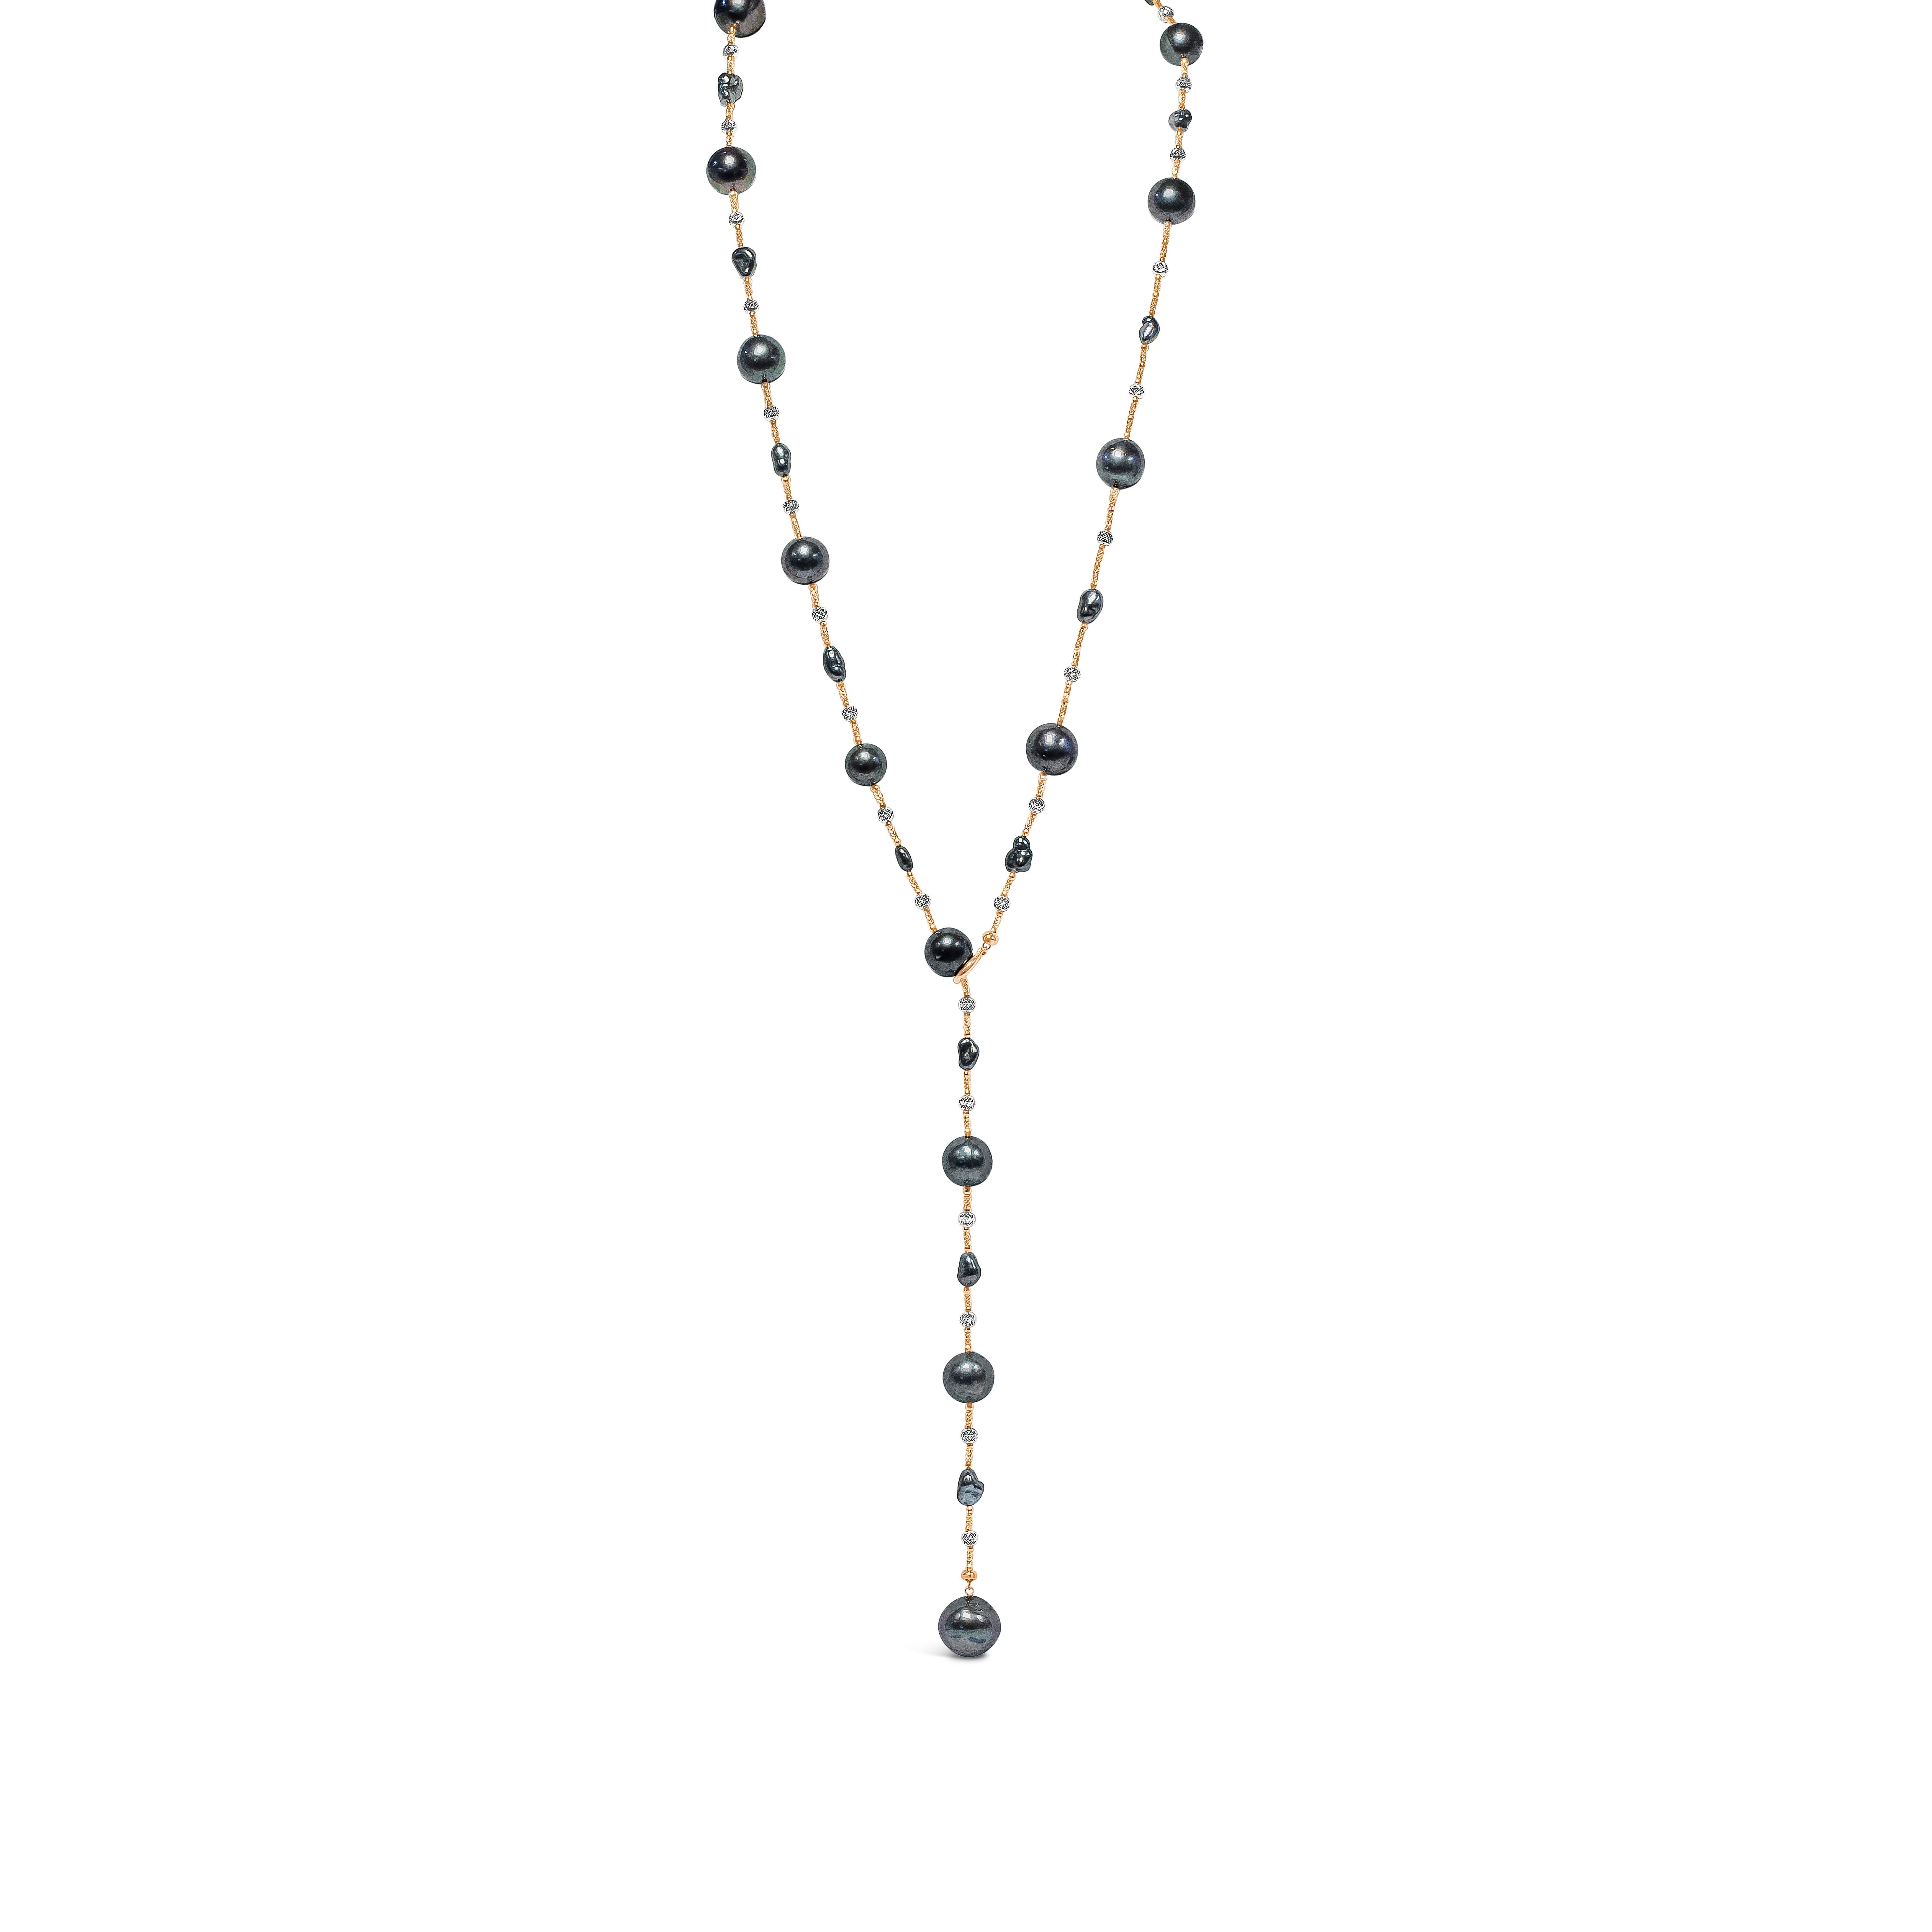 Eine sehr vielseitige Halskette mit 11-14 mm großen Tahiti-Perlen, die durch Knoten aus 18 Karat Weißgold getrennt sind. 32 Zoll in der Länge und kann auf mehrere Arten als Halskette oder Armband verwendet werden. Hergestellt aus 18 Karat